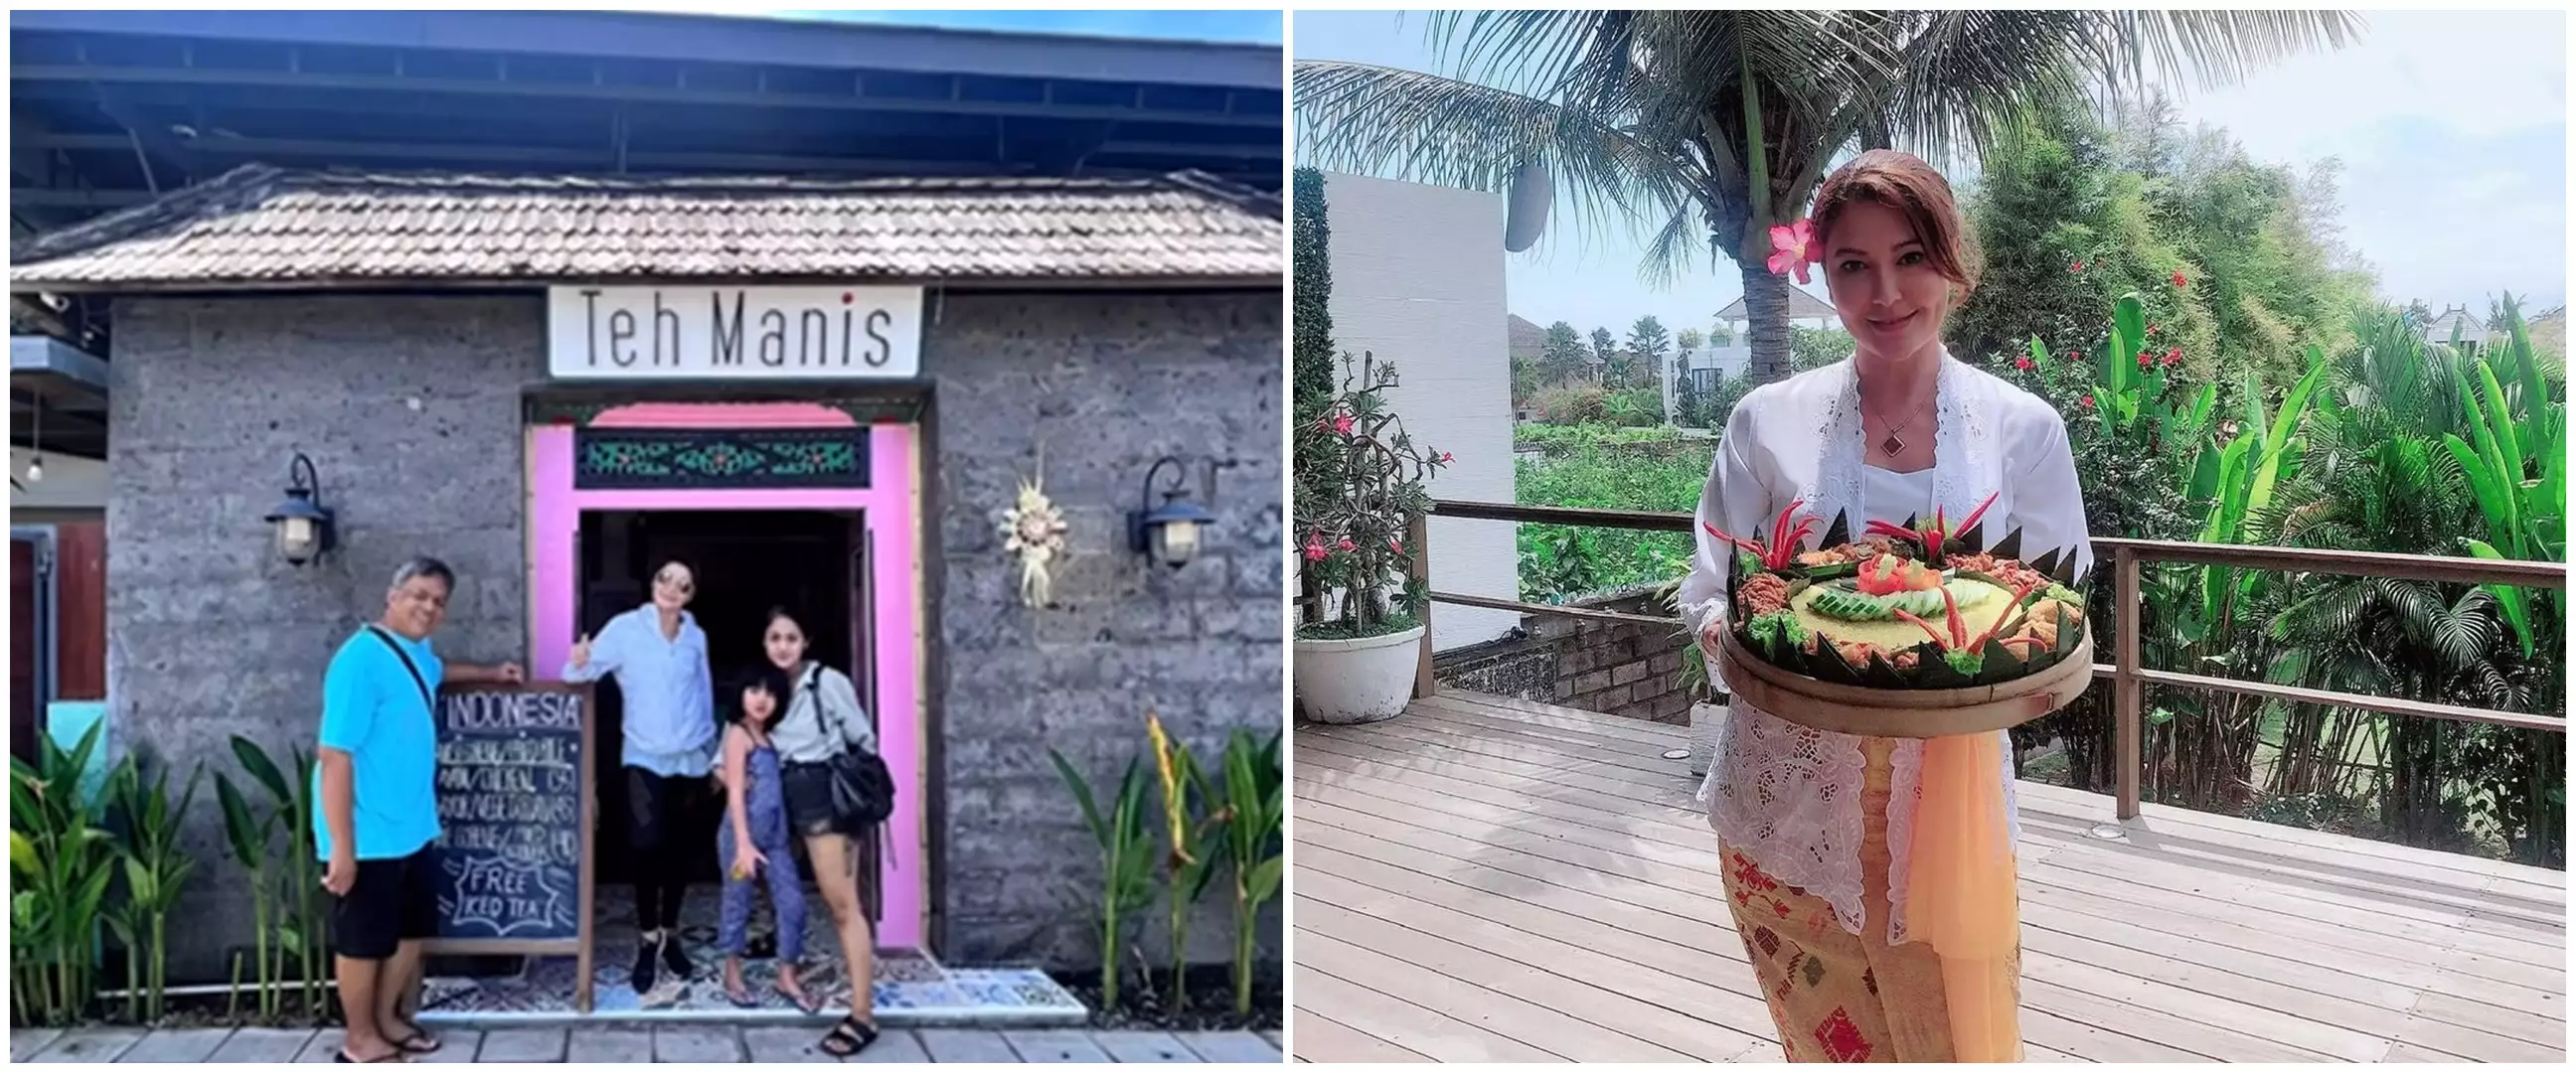 Punya rumah bernuansa alam diubah jadi tempat jualan, ini 10 potret warung Tamara Bleszynski di Bali